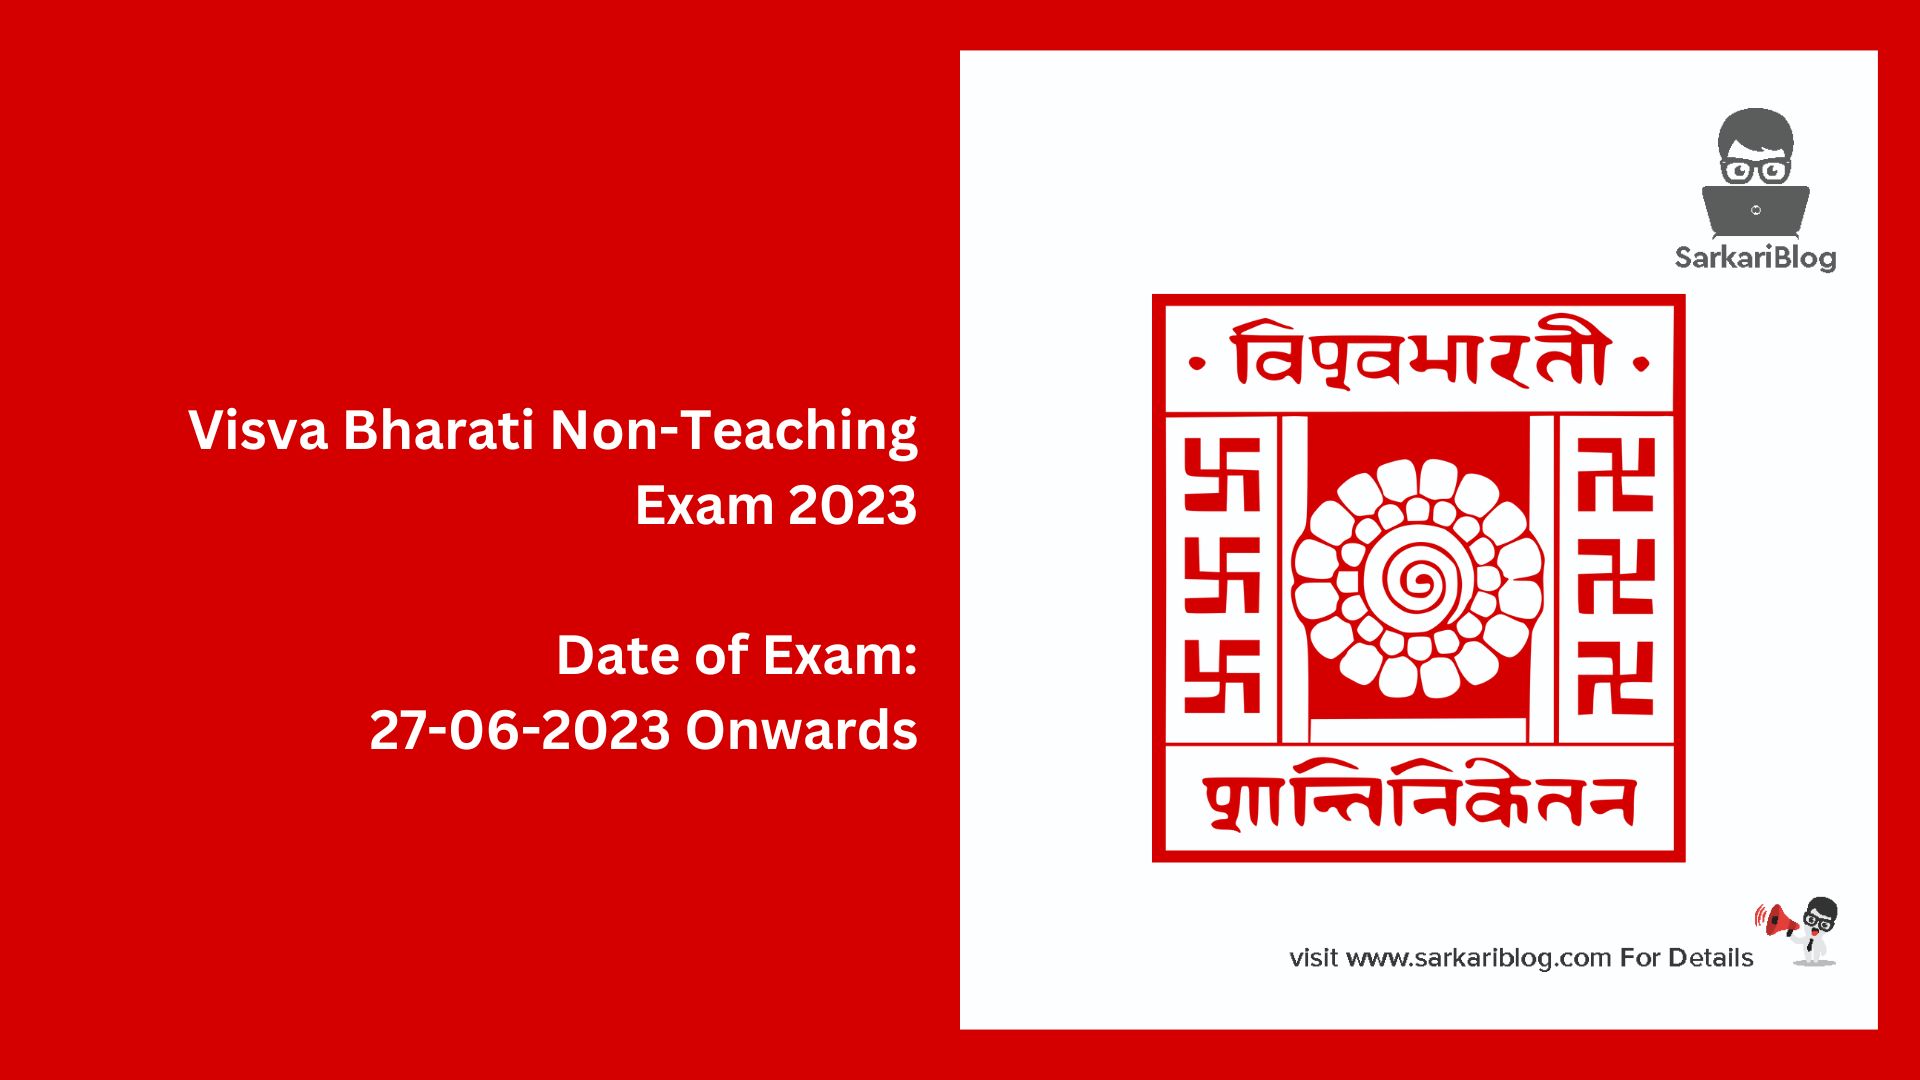 Visva Bharati Non-Teaching Exam 2023